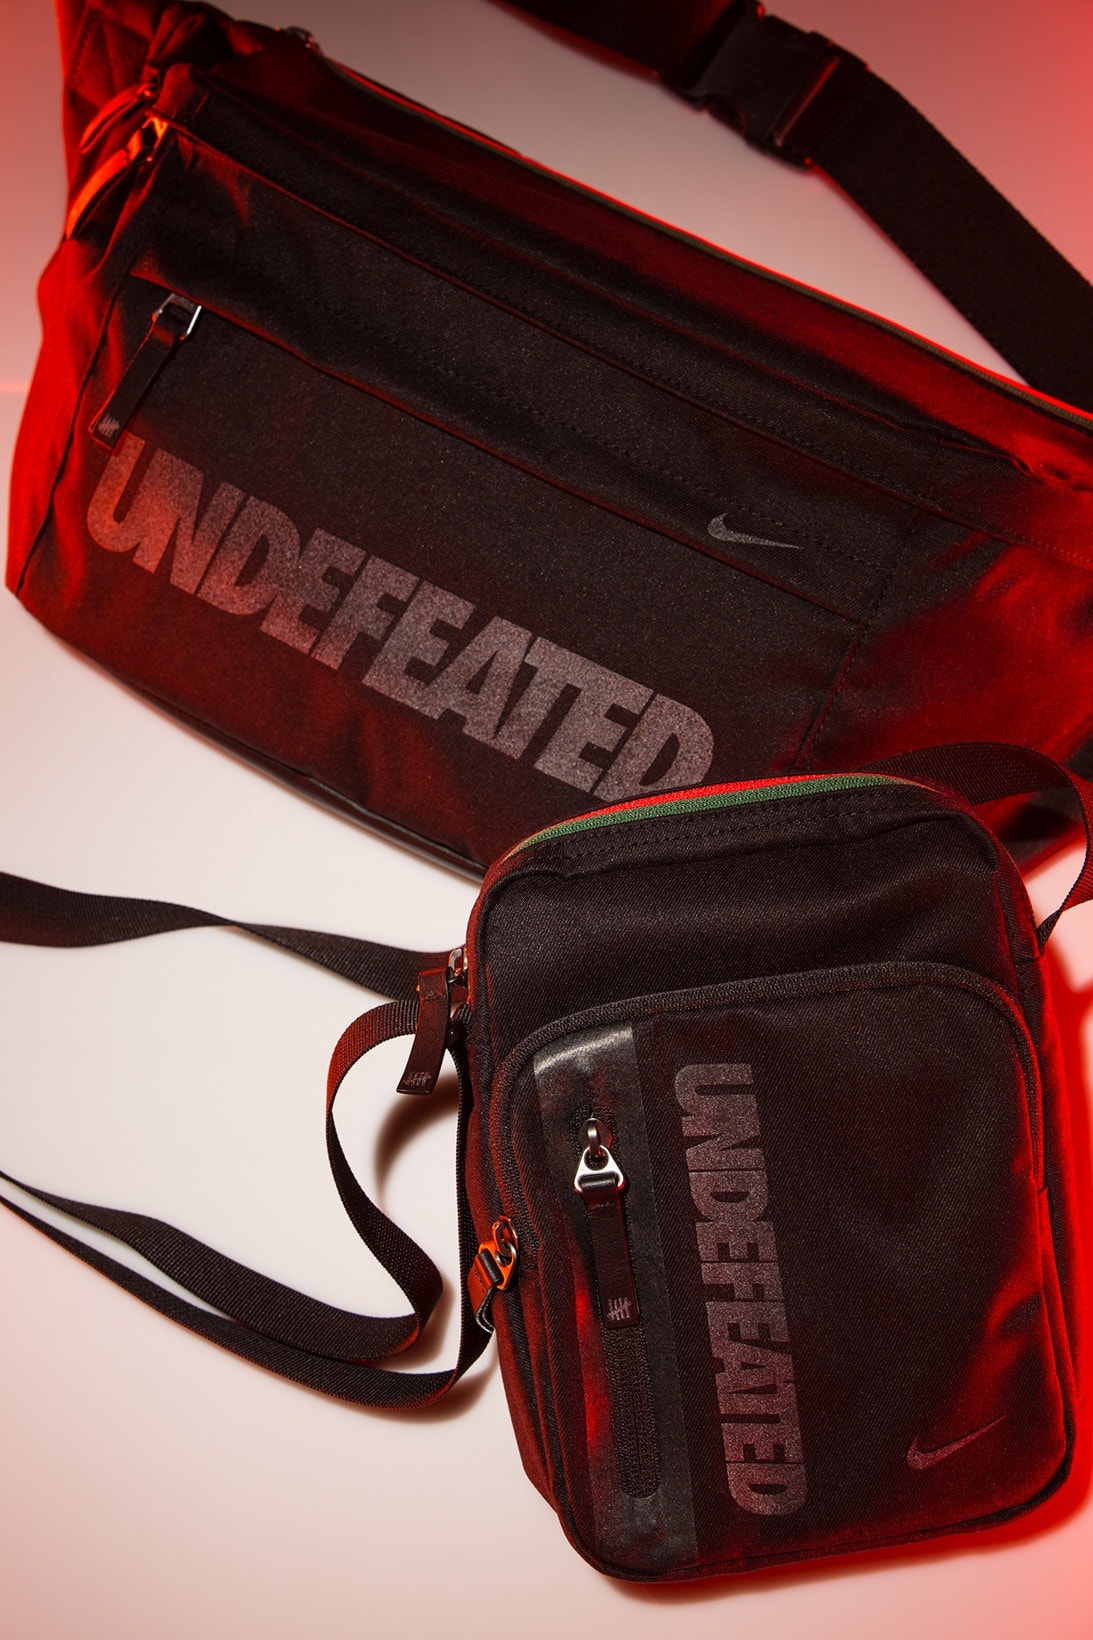 UNDEFEATED x Nike Air Max 97 及配套聯名單品完整公開